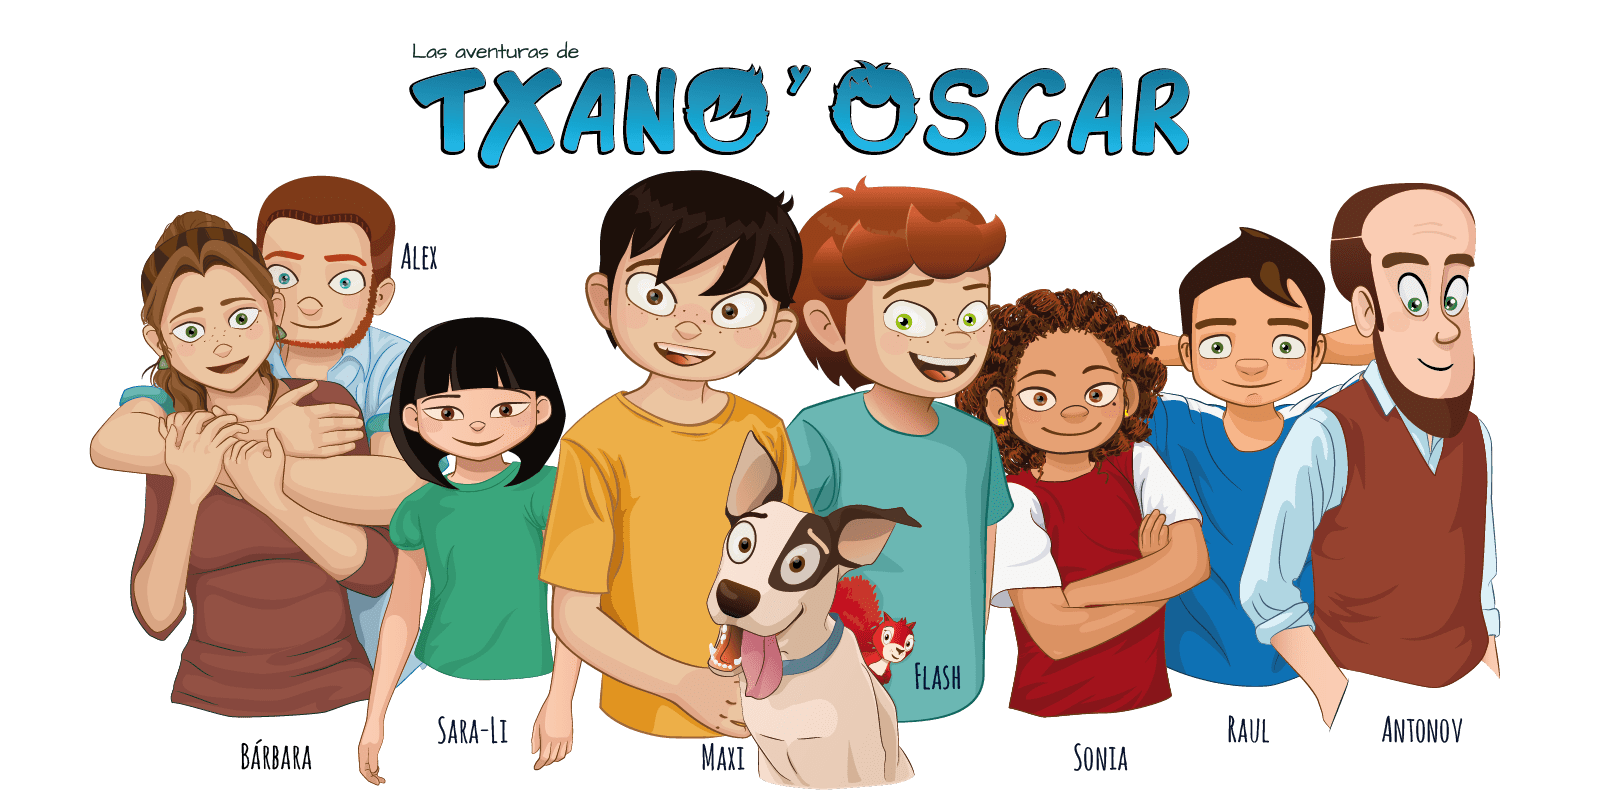 Un viaje por las aventuras de Txano y Oscar